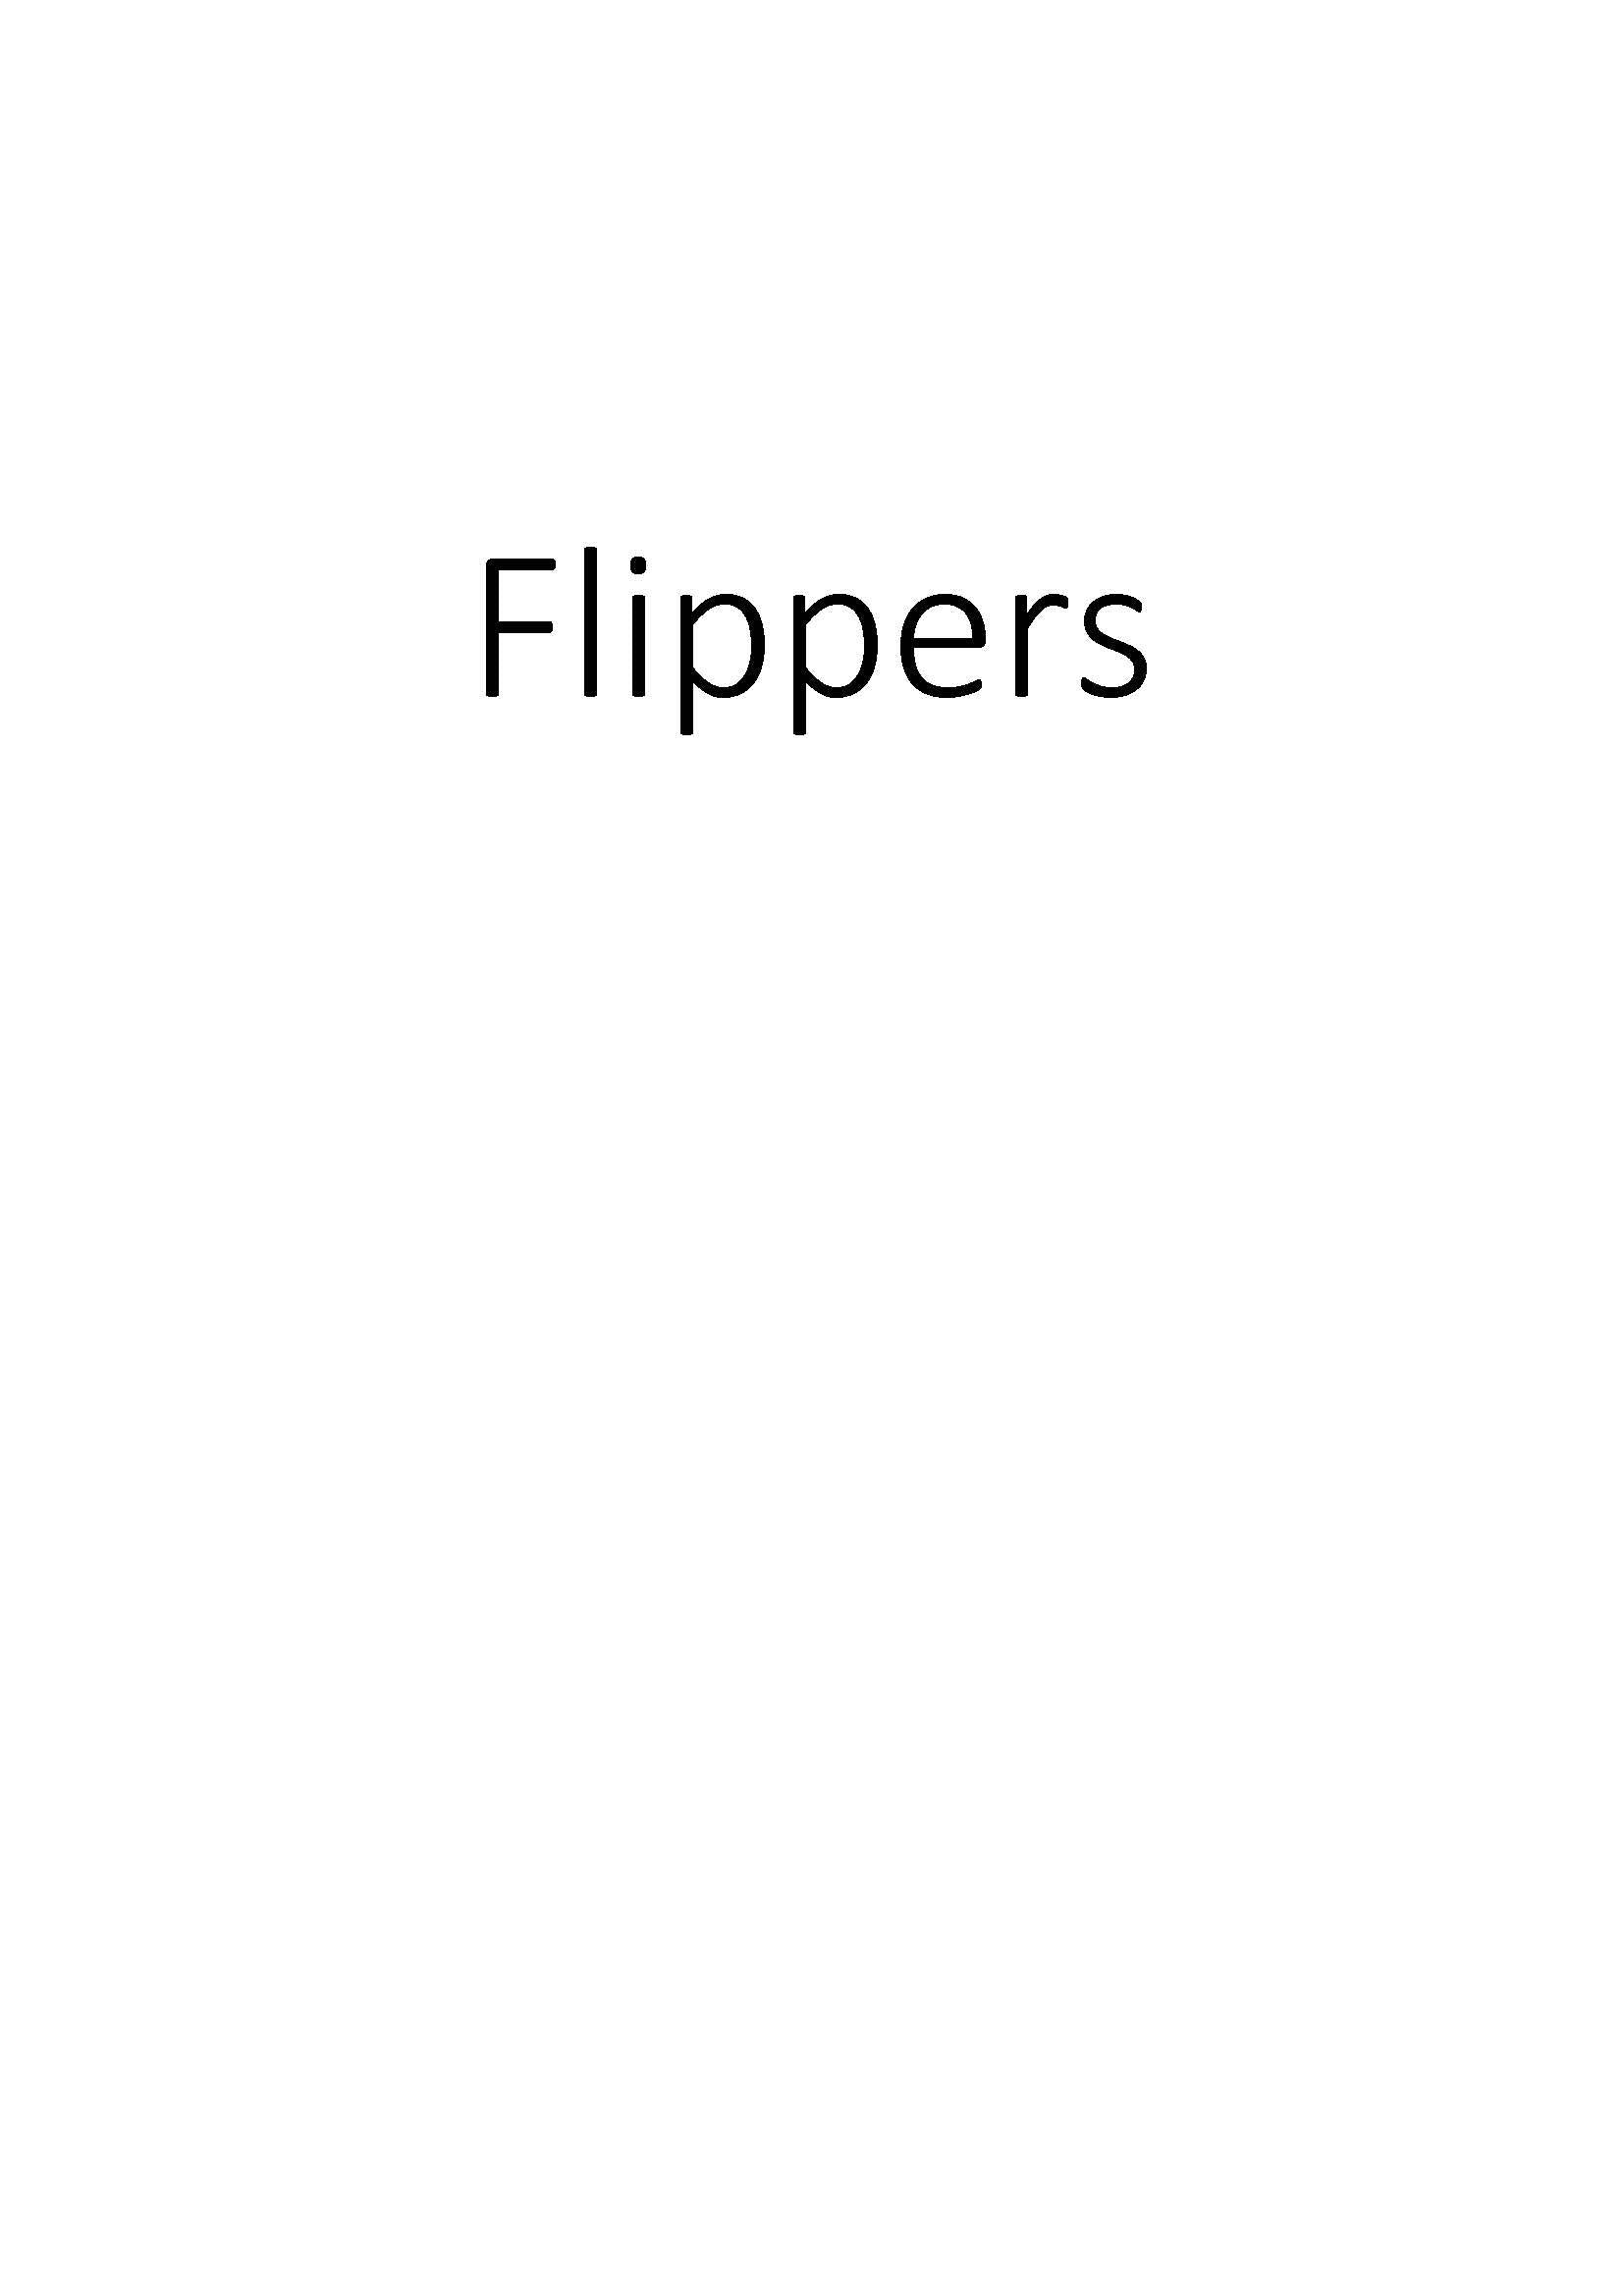 Flippers clicktofournisseur.com